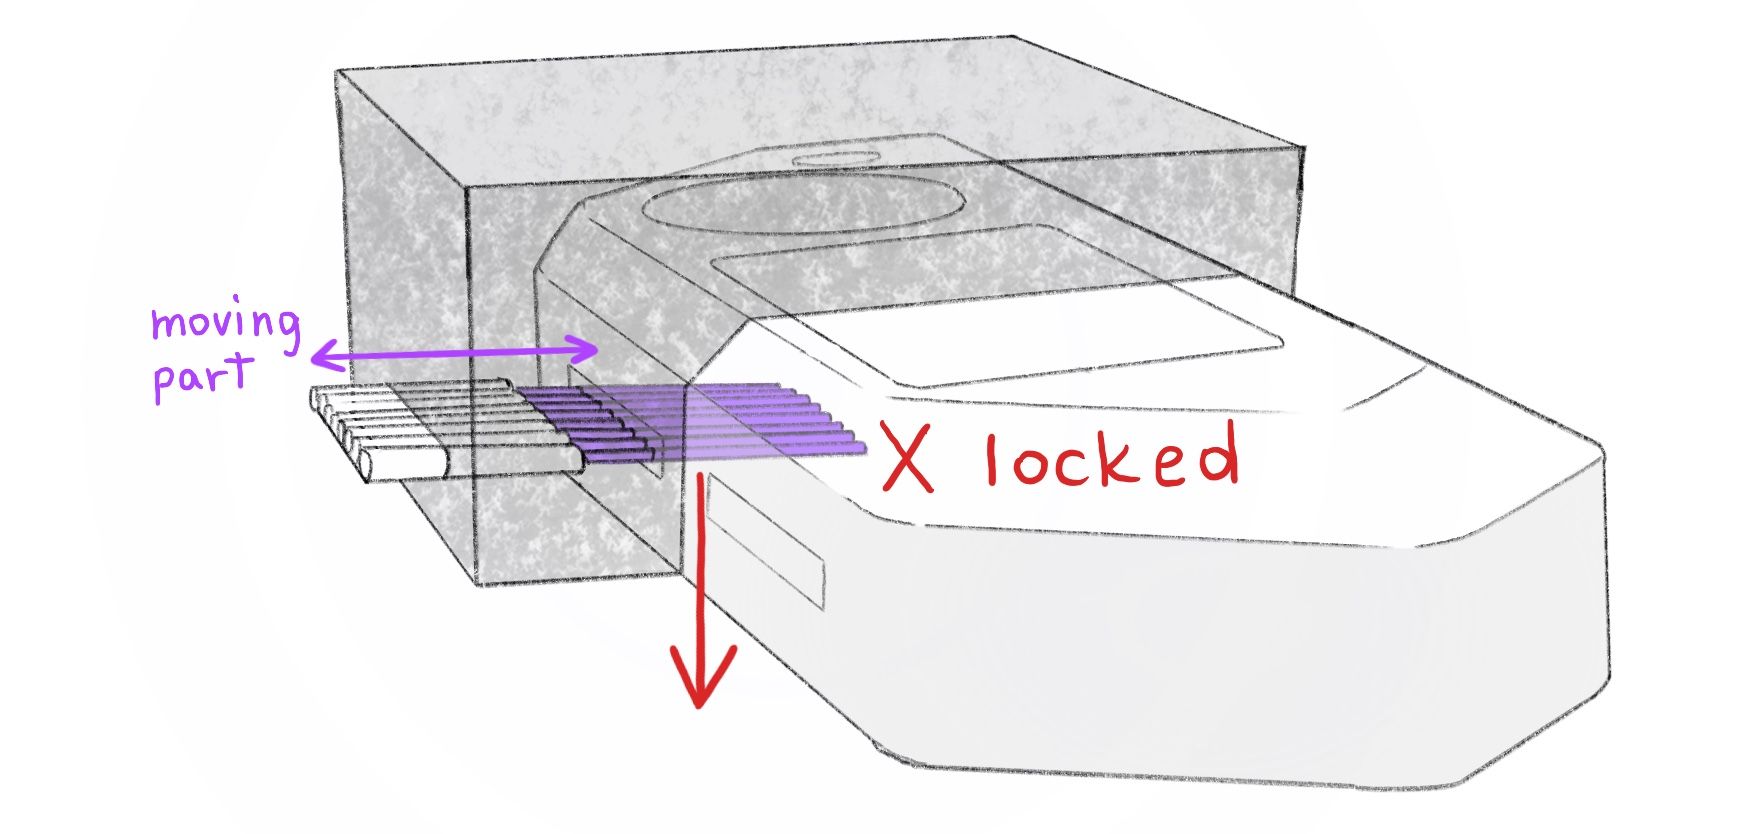 Иголки для дырок GPIO блокируют извлечение детали из пресс-формы, поэтому иголки подвижные и убираются перед извлечением 